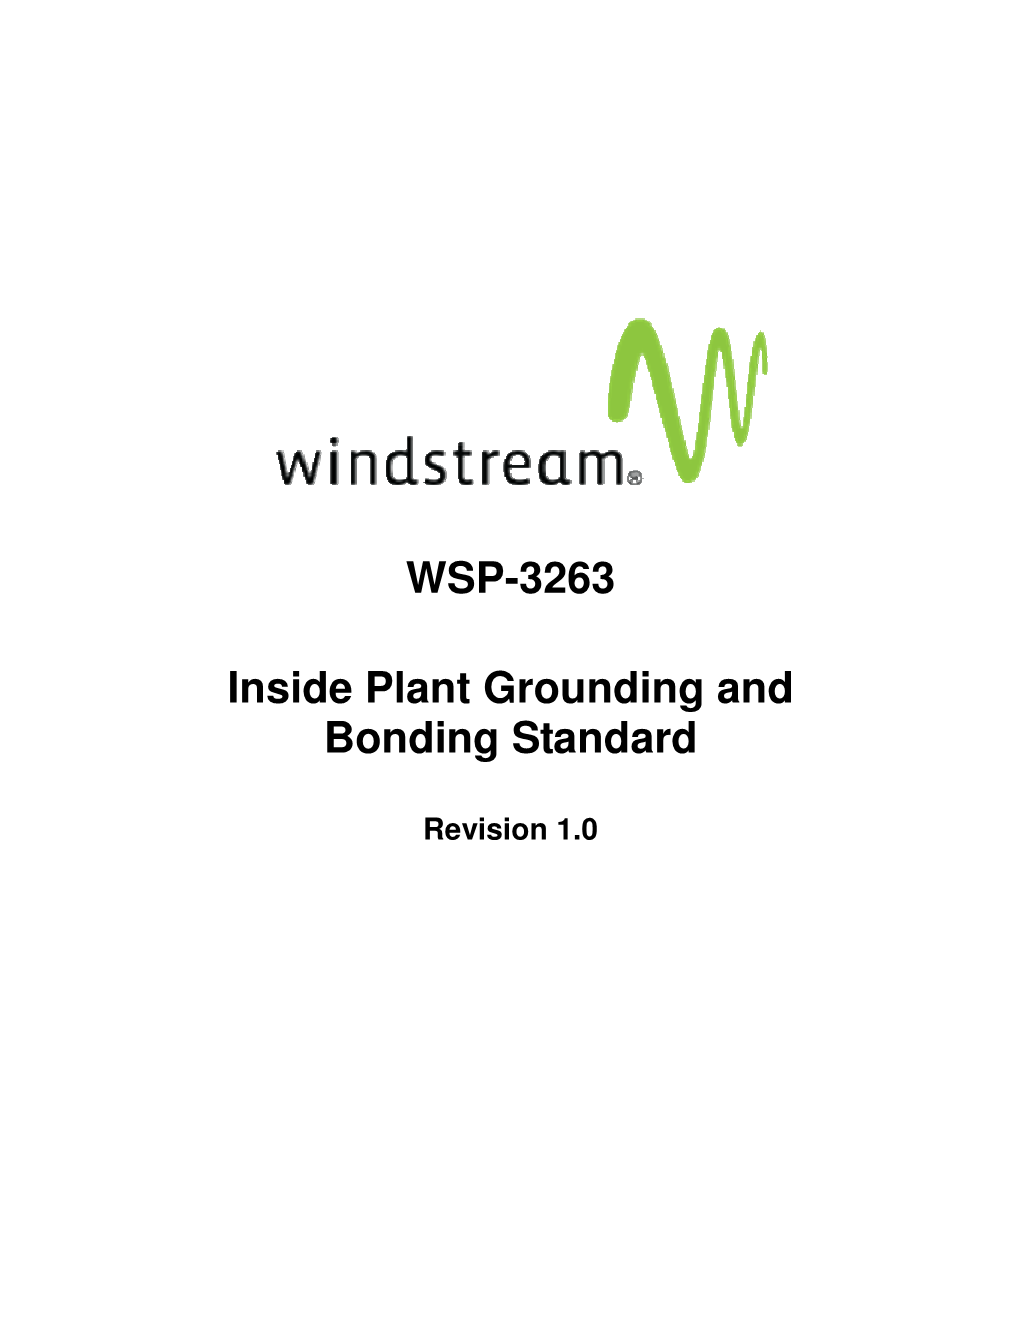 WSP-3263 Inside Plant Grounding and Bonding Standard